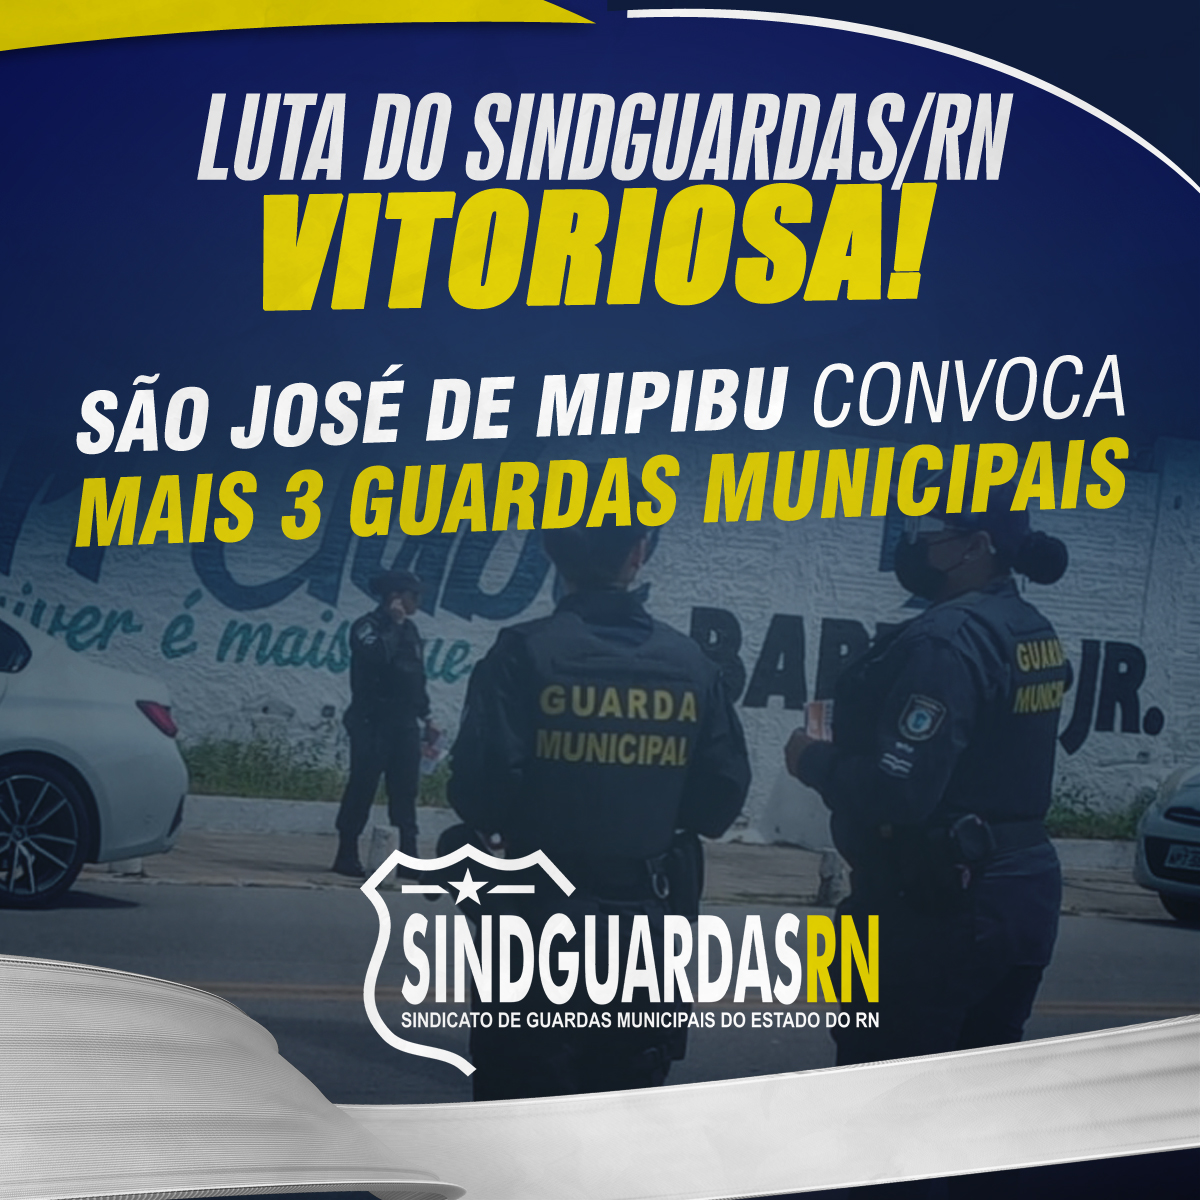 VITÓRIA: São José de Mipibu convoca mais 3 guardas municipais